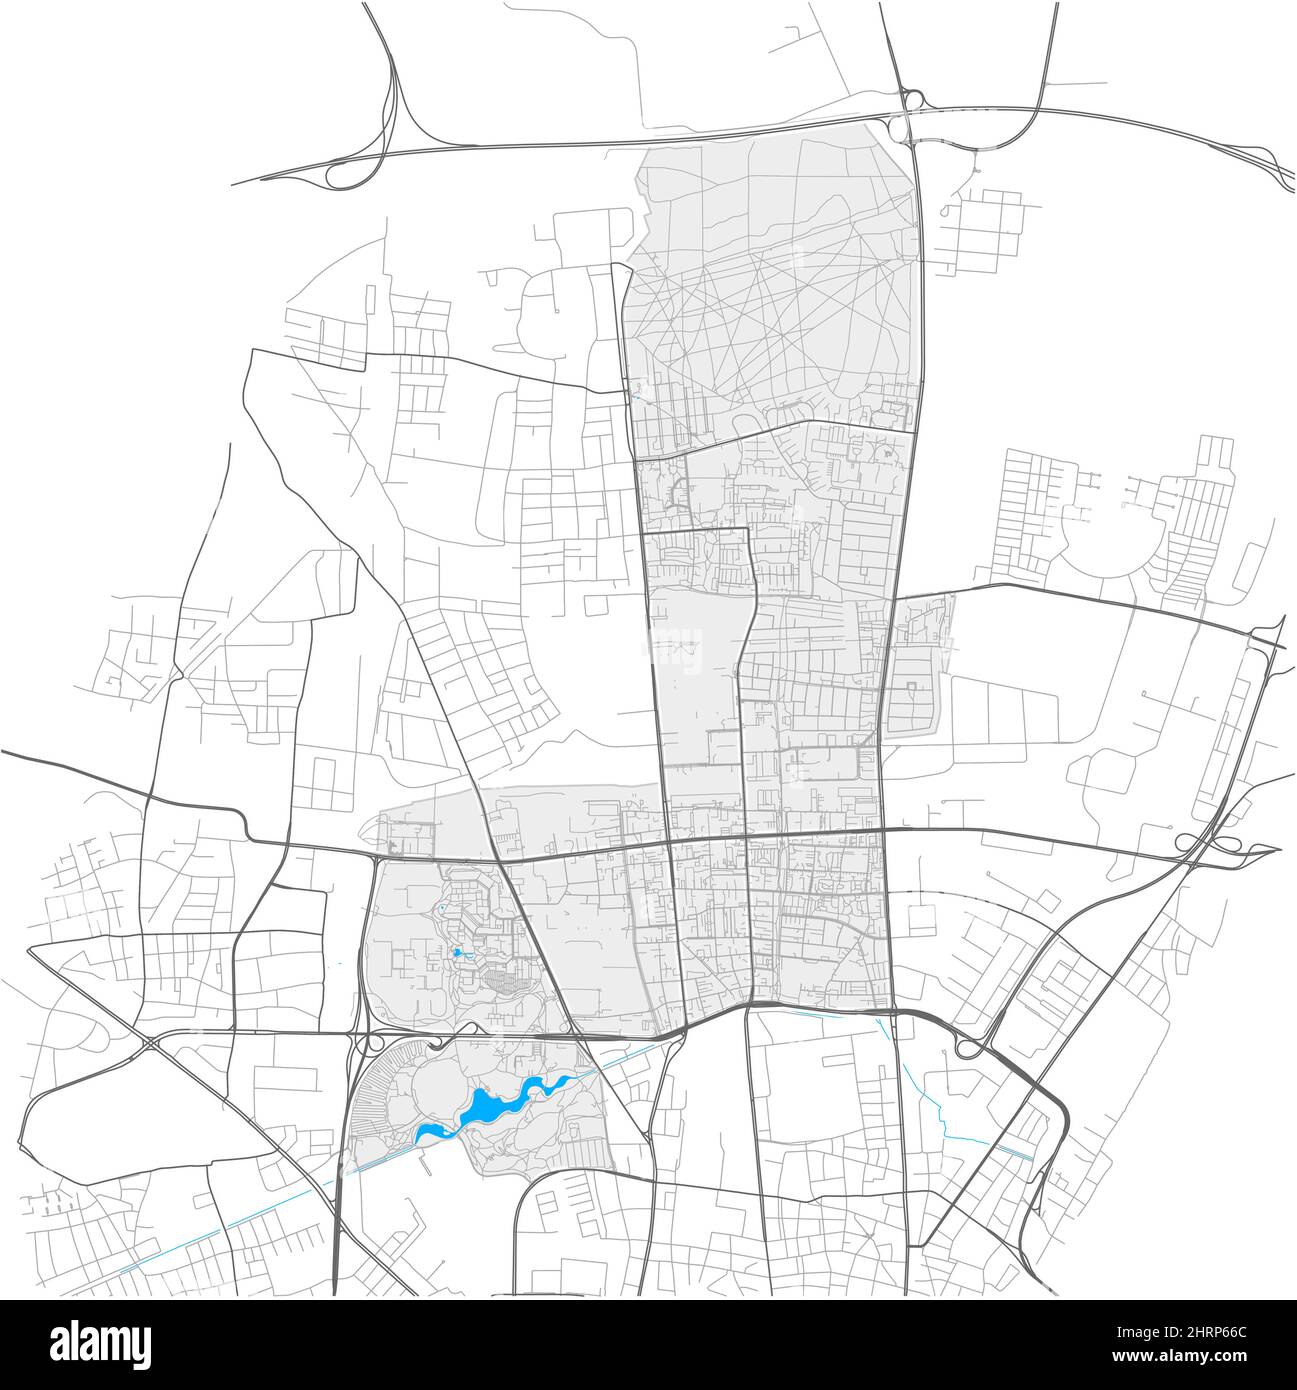 Milbertshofen-am Hart, München, DEUTSCHLAND, detailreiche Vektorkarte mit Stadtgrenzen und editierbaren Pfaden. Weiße Umrisse für Hauptstraßen. Viele klein Stock Vektor